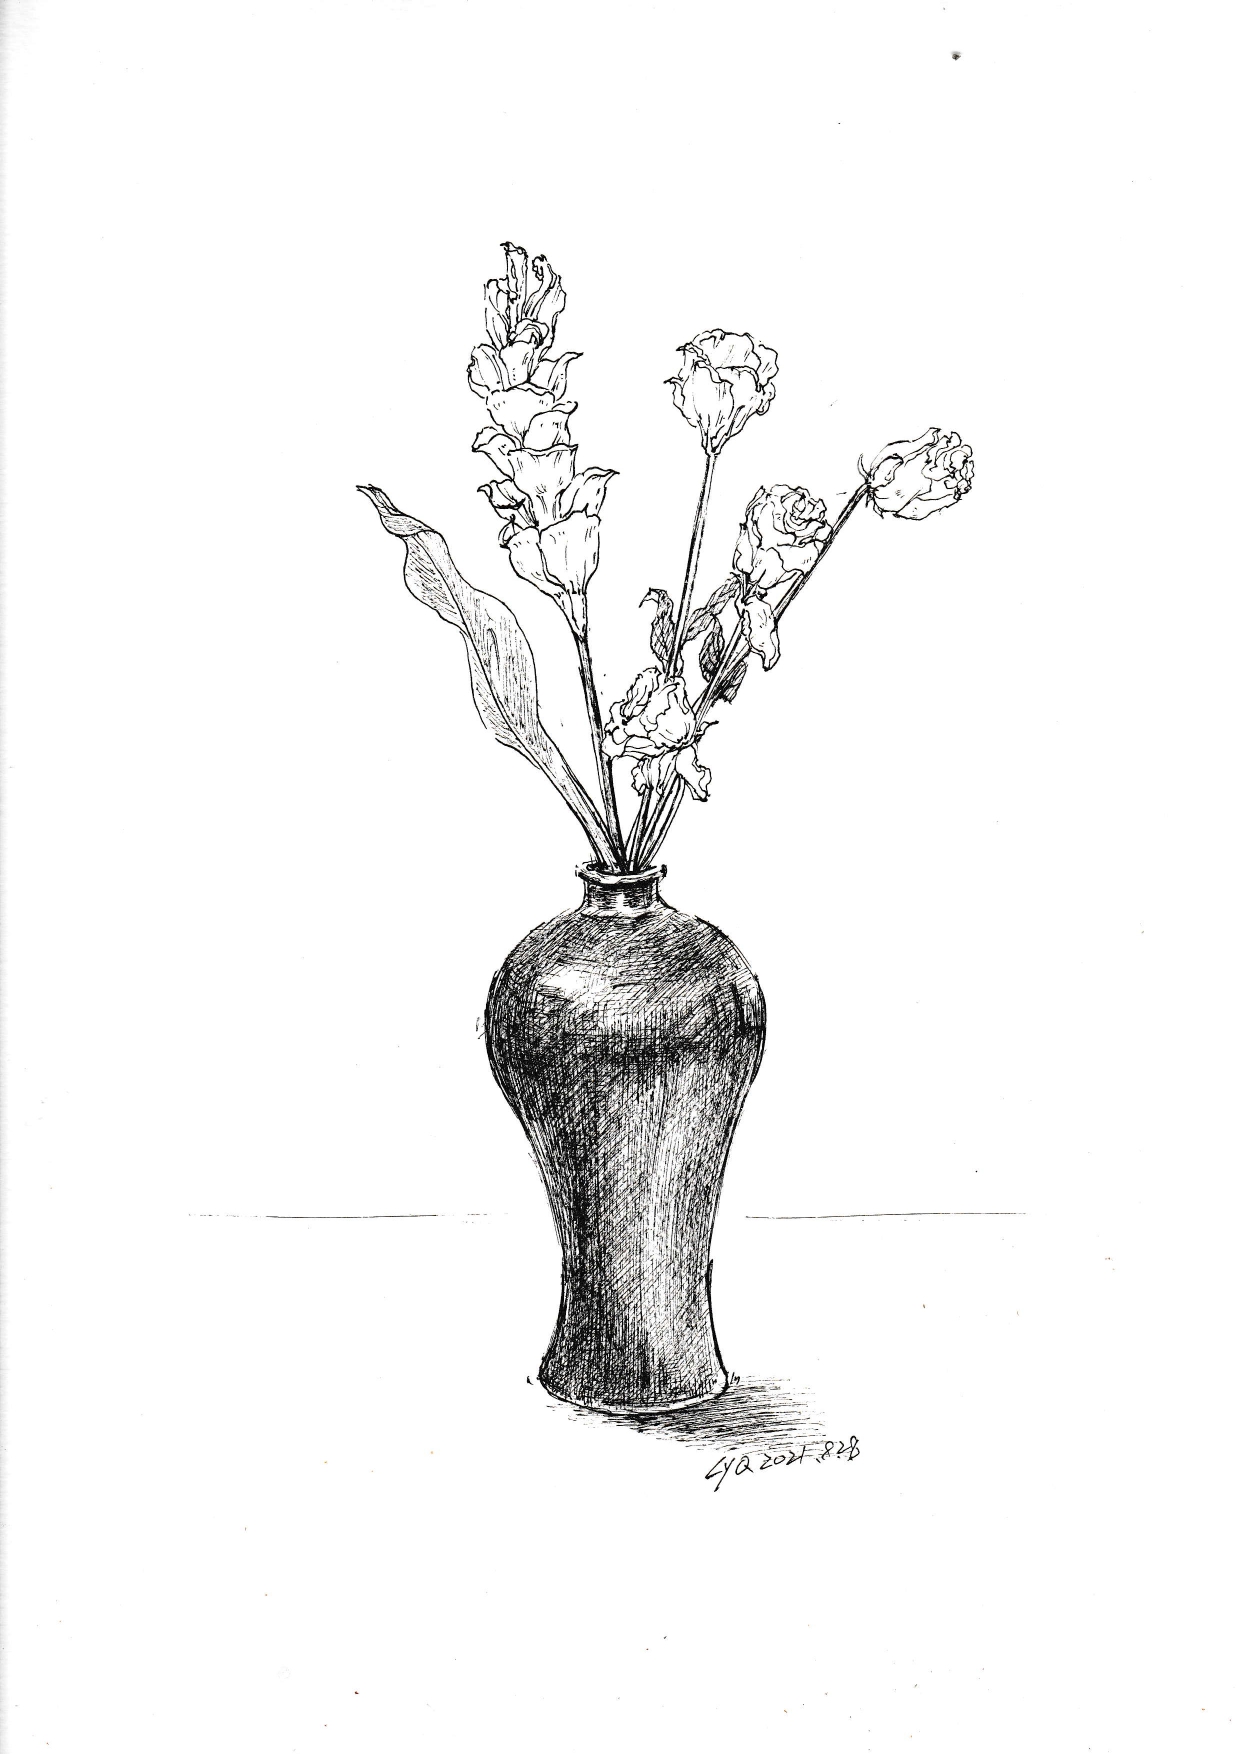 花瓶简笔画 素描图片